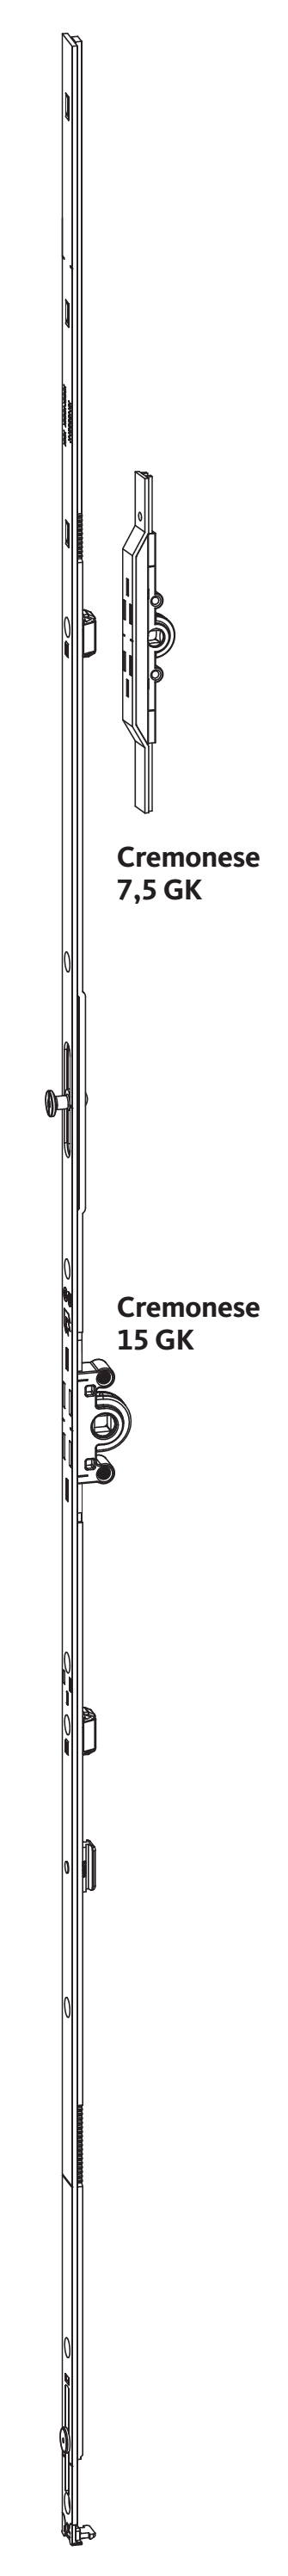 GU-ITALIA -  Cremonese UNI-JET anta ribalta altezza maniglia fissa con piedino senza dss per ribalta - gr / dim. 1190 - entrata 7,5 - alt. man. 500 - lbb/hbb 1101 - 1350